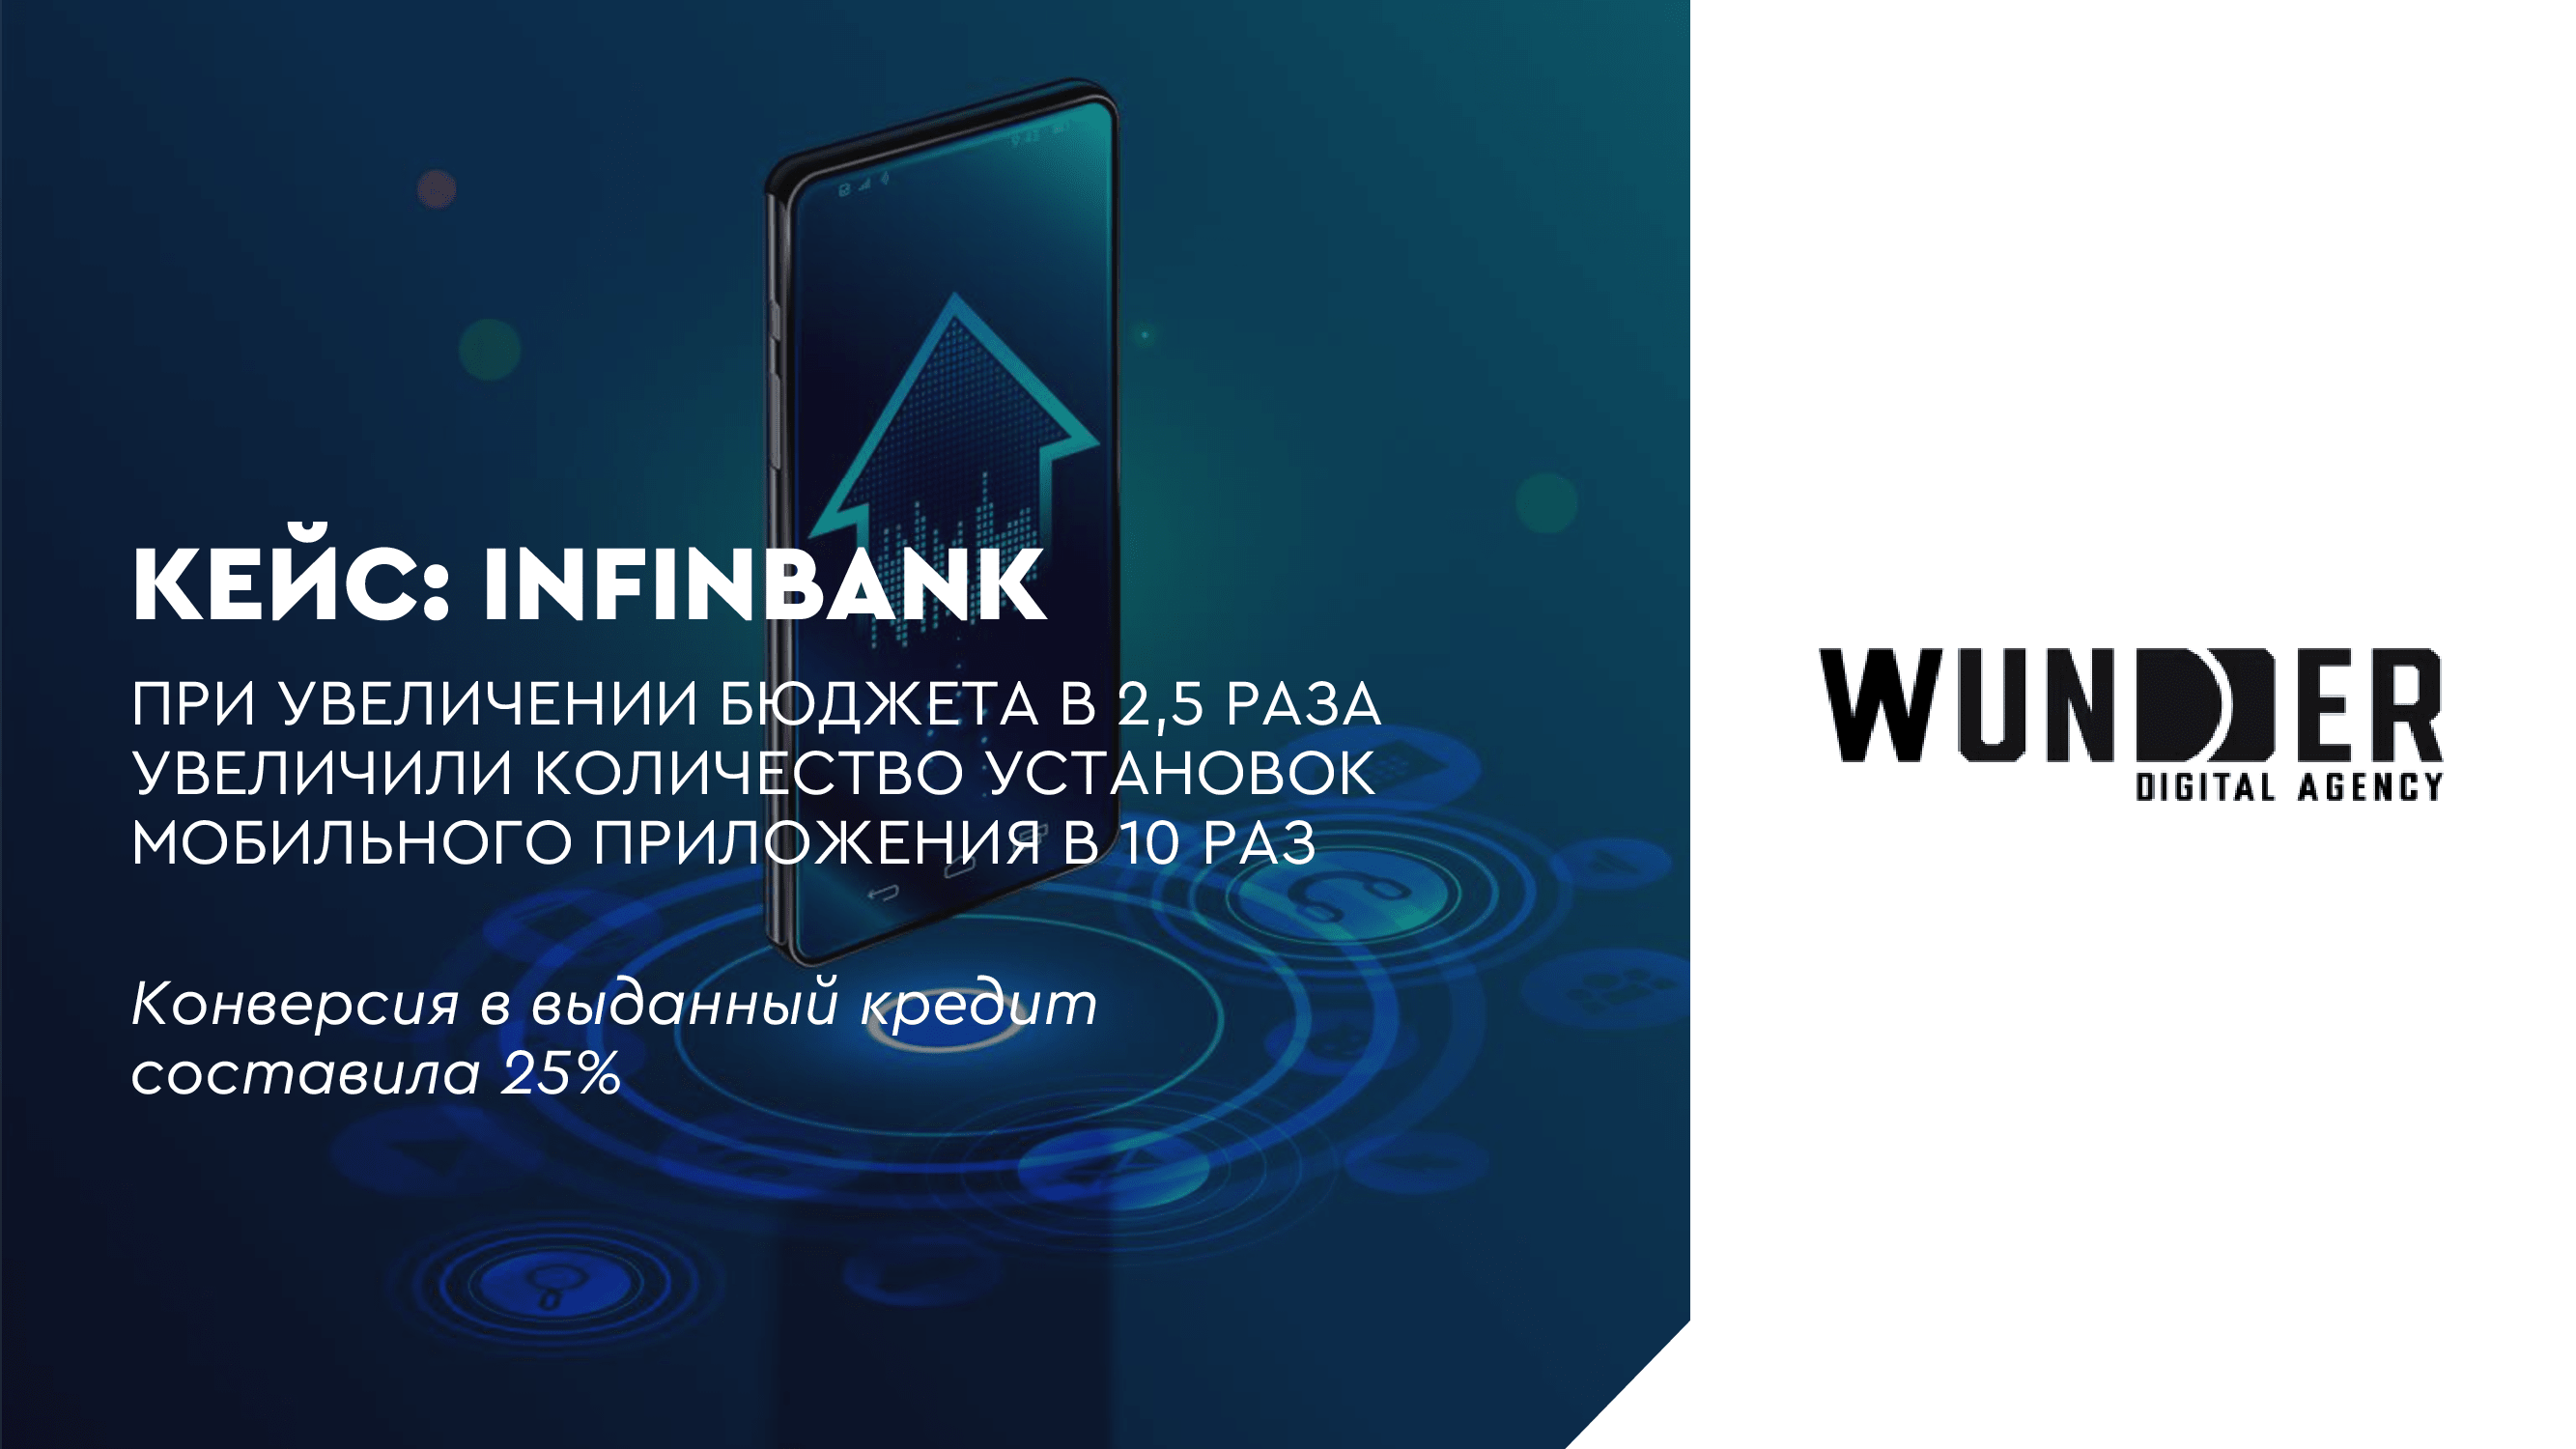 Увеличили количество установок мобильного приложения в 10 раз — Infinbank